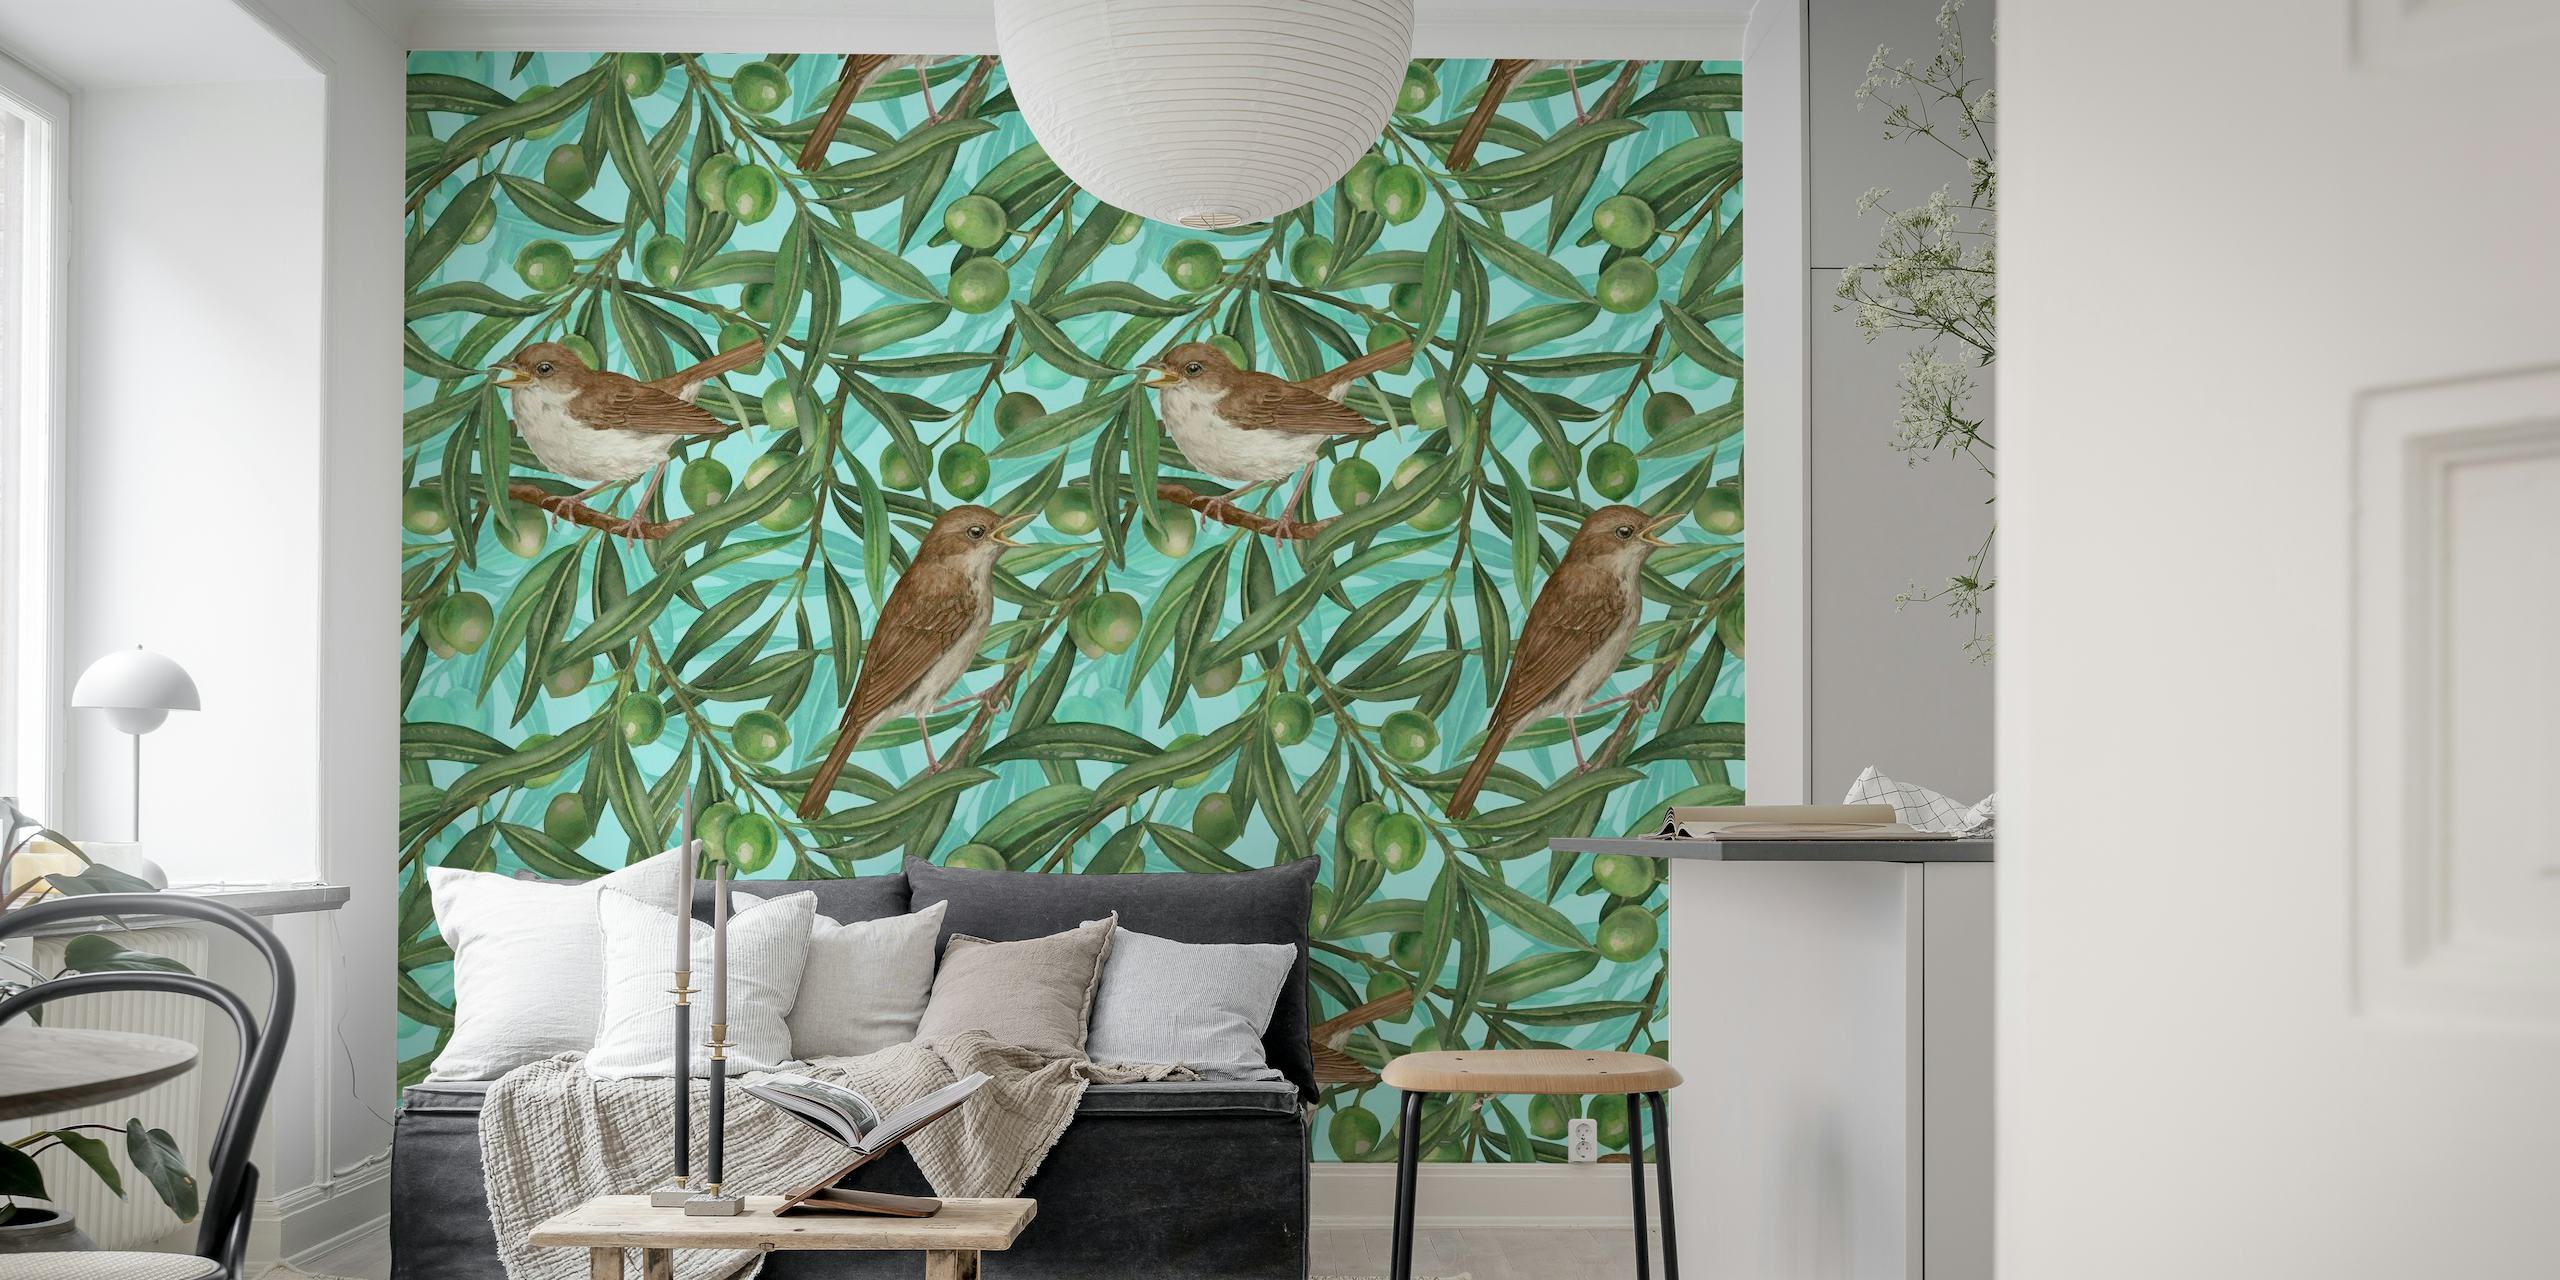 Ilustrativni zidni mural s pticama koje sjede u stablima maslina sa zrelim maslinama